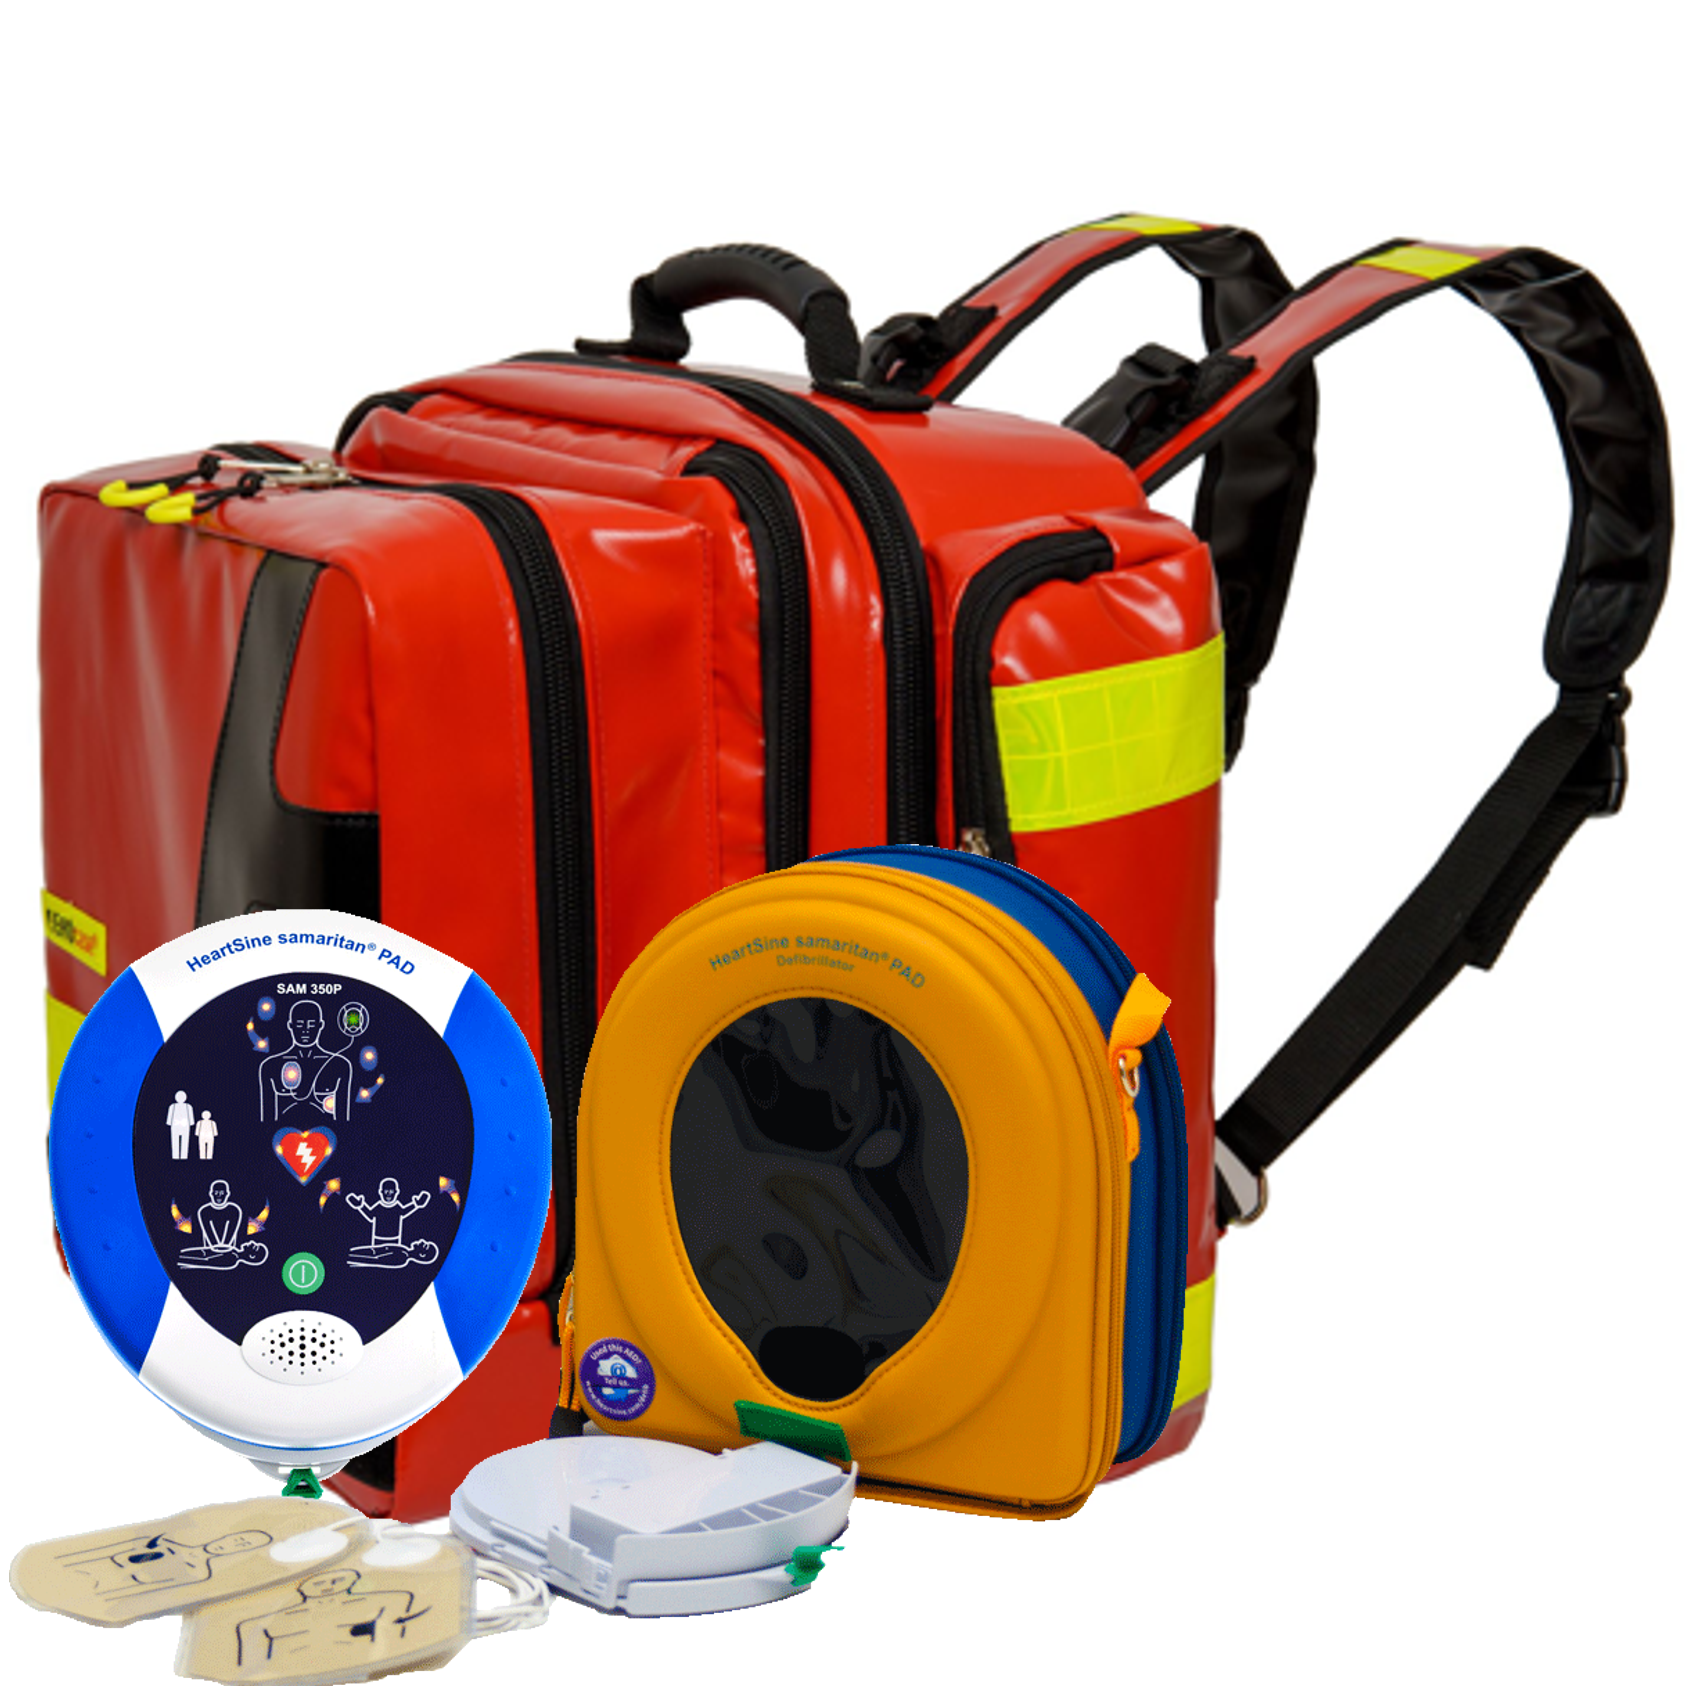 AED Traveller-Paket mit HeartSine SAM350P, manuelle Schockauslösung, 8 Jahre Garantie